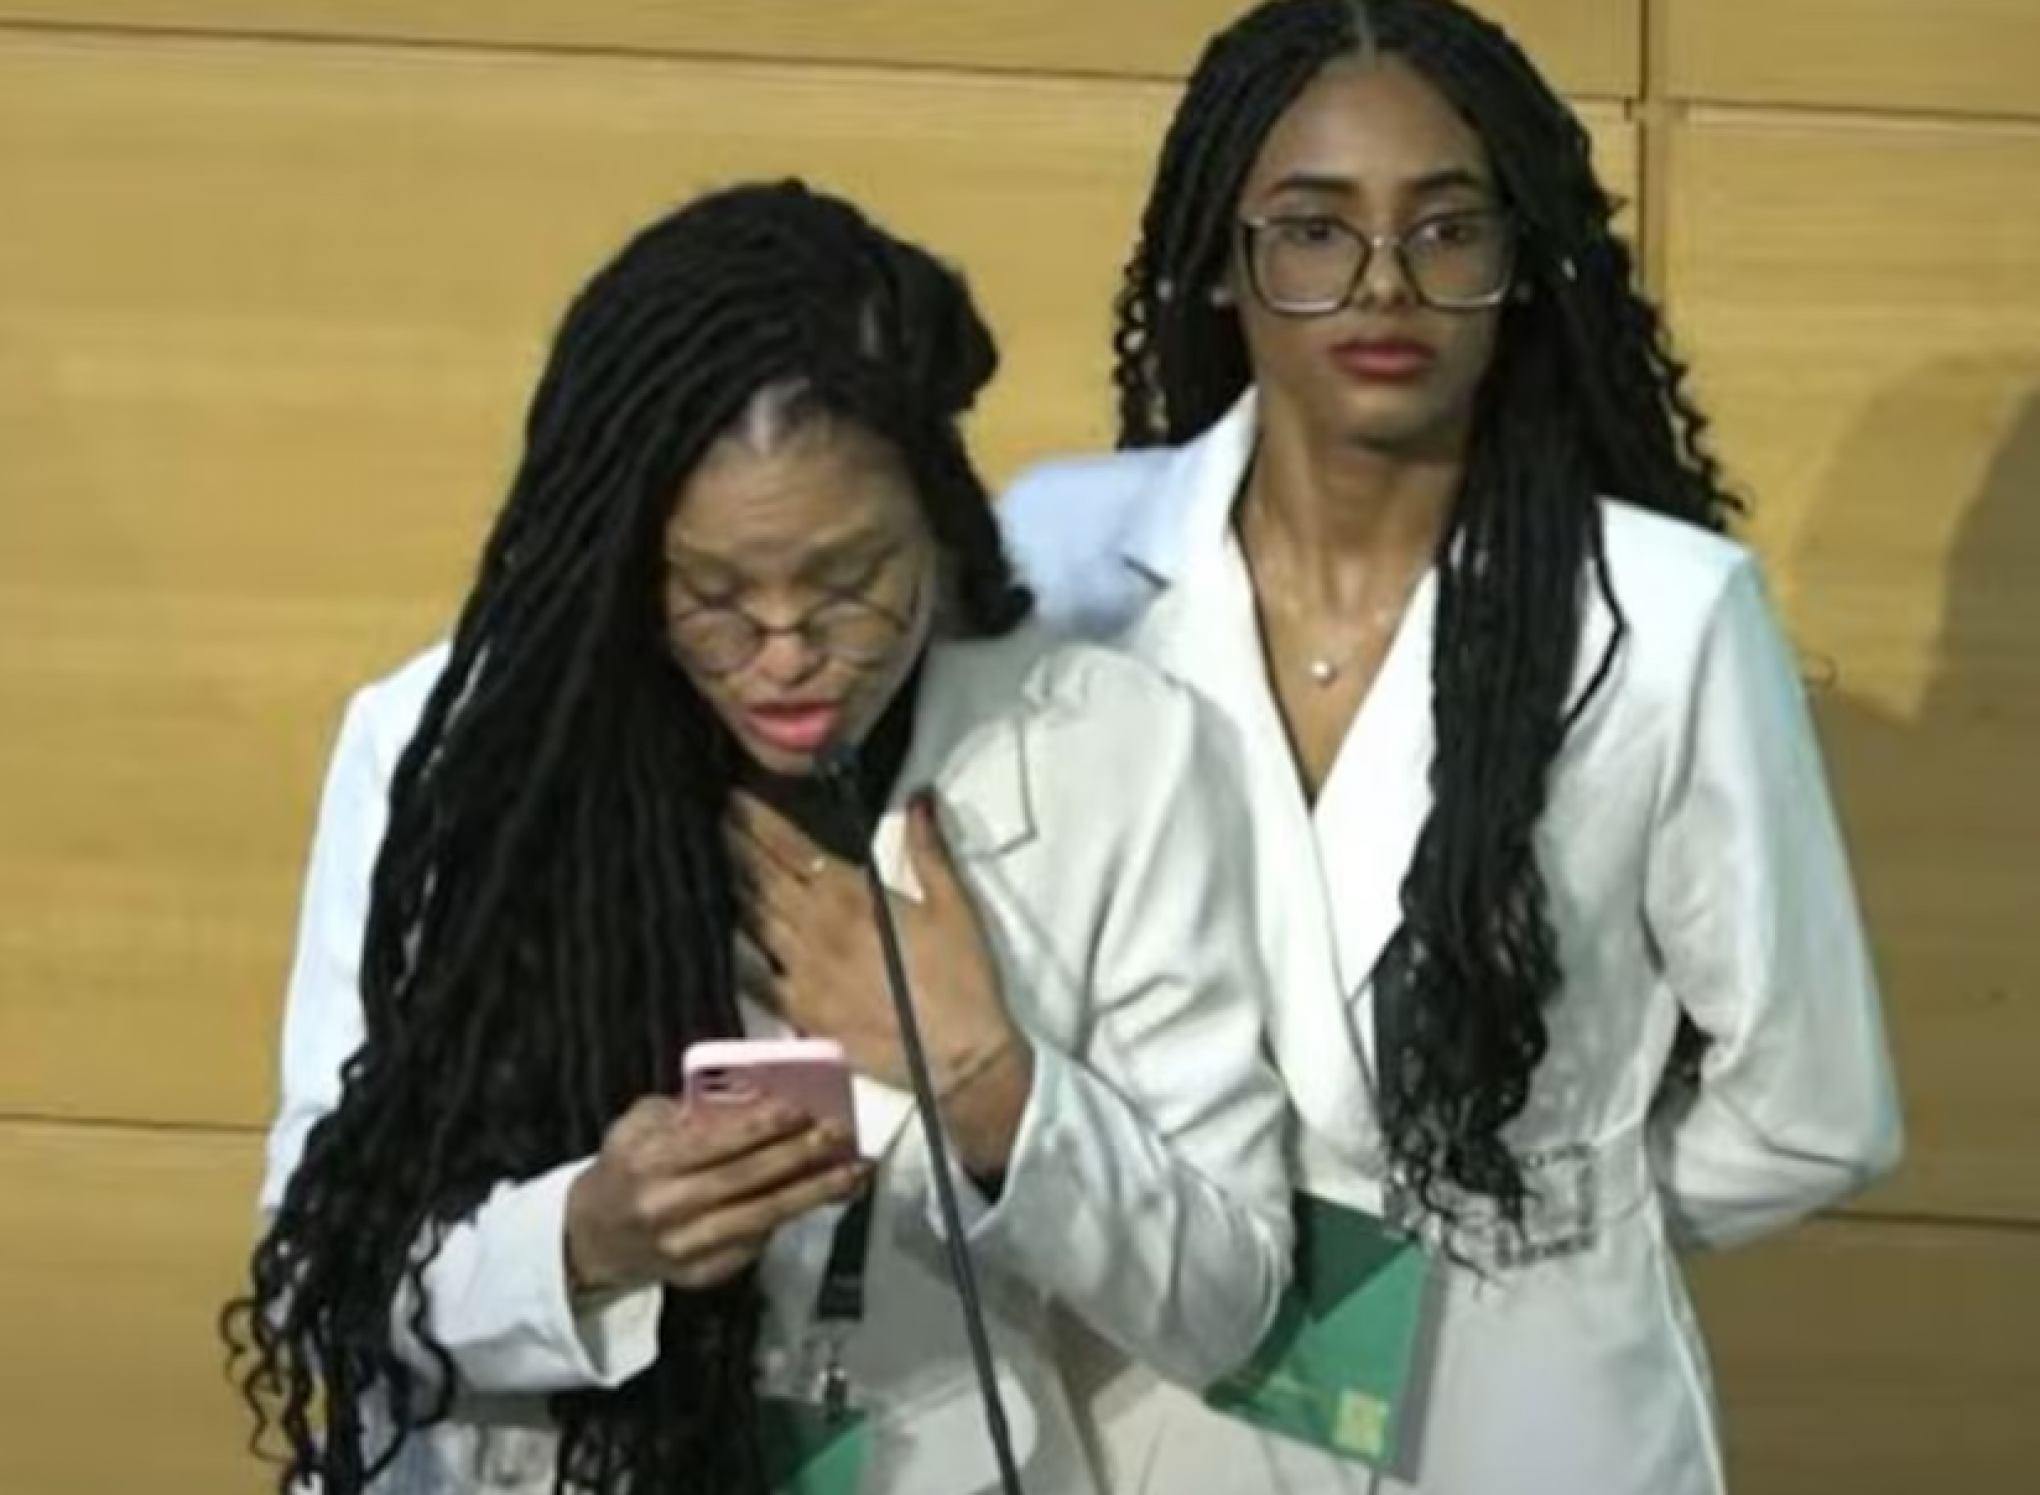 Palestrantes brasileiras denunciam episódio de racismo durante evento Harvard